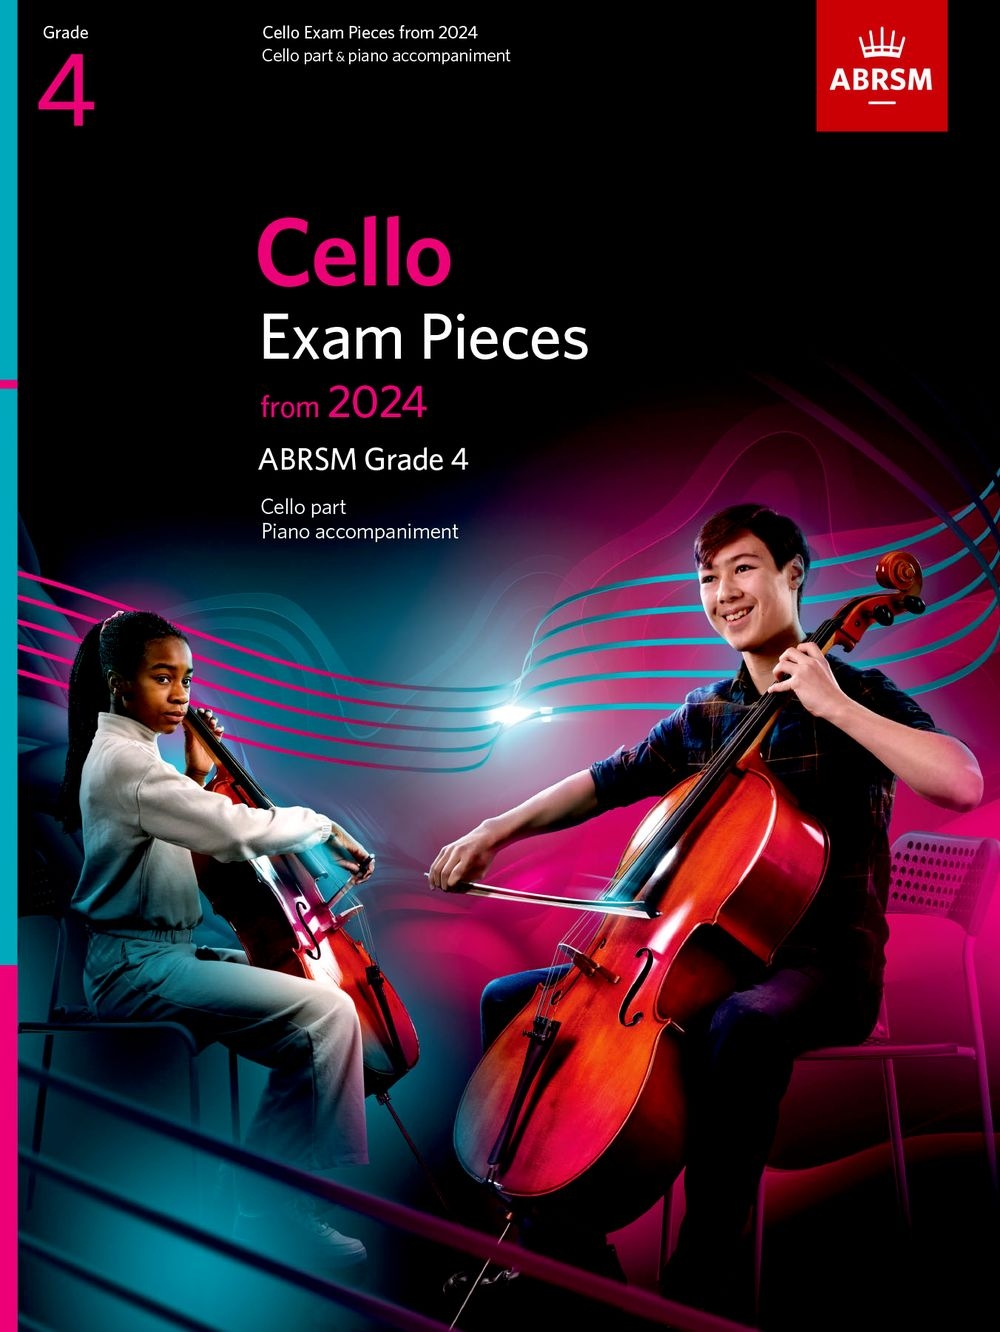 Cello Exam Pieces from 2024, ABRSM Grade 4